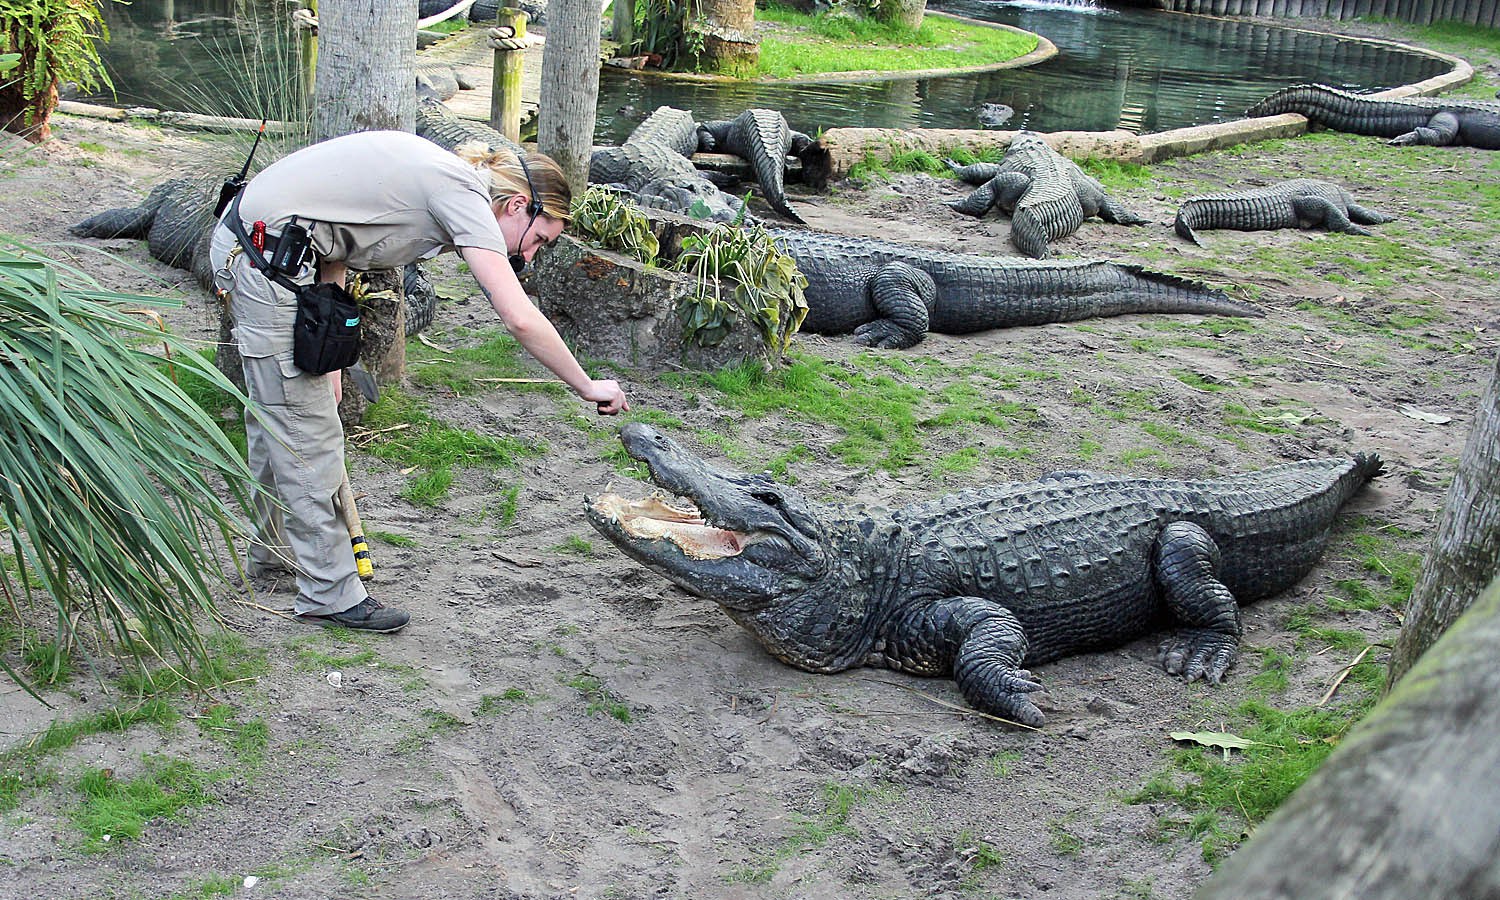 Cocodrilo de St. Augustine Alligator Farm mordió a un visitante tras ingresar a su área